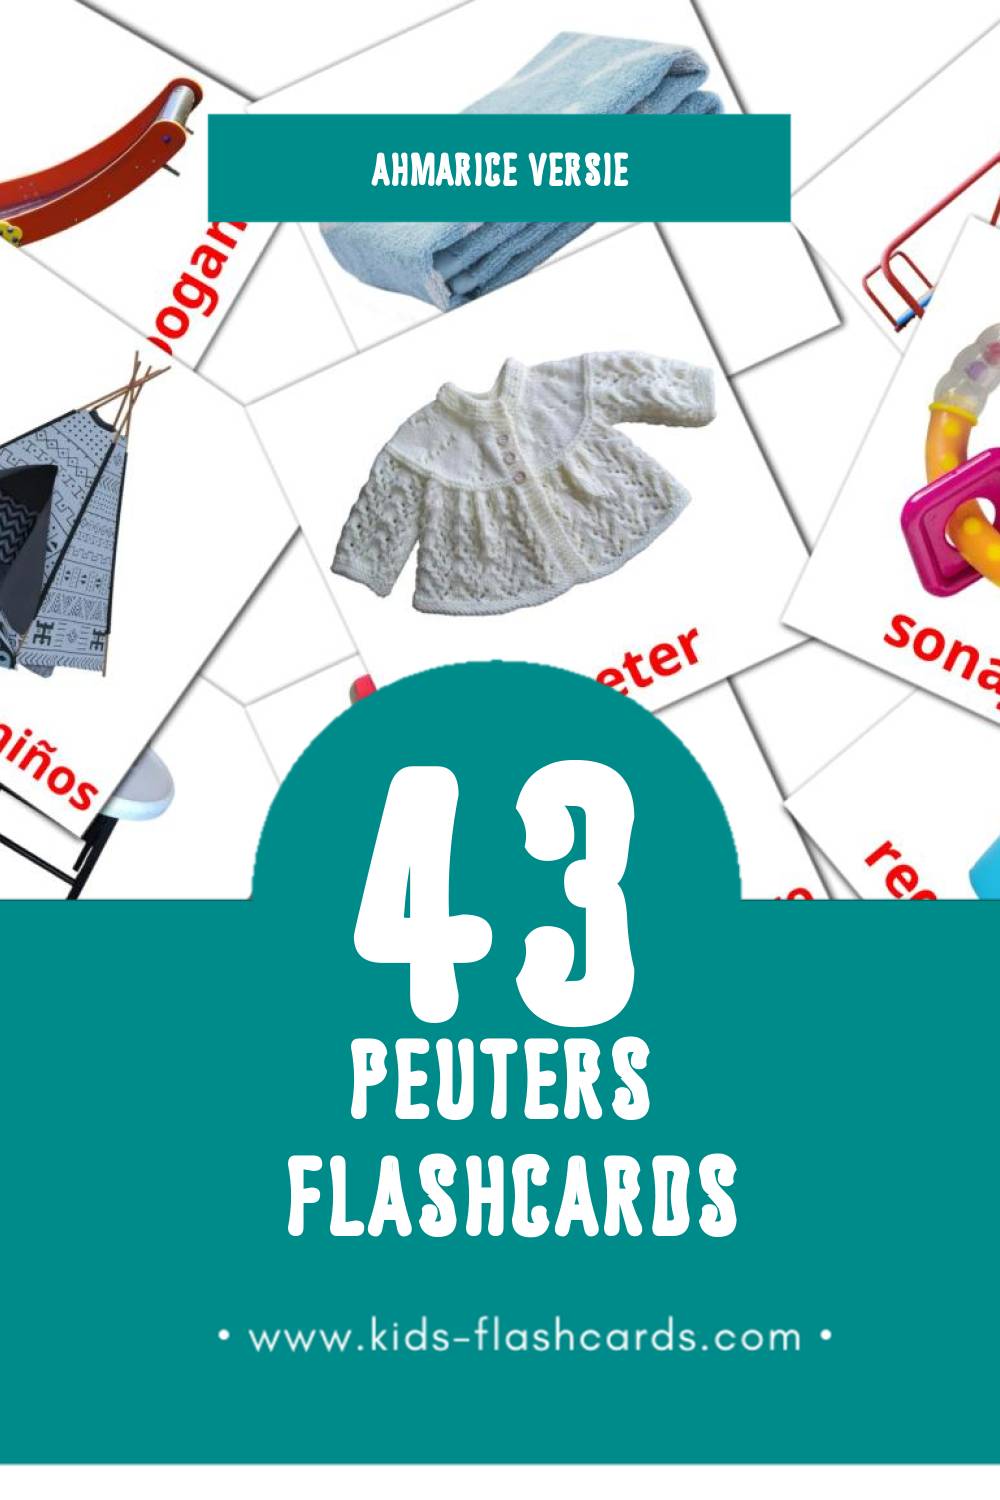 Visuele Bebê  Flashcards voor Kleuters (32 kaarten in het Ahmaric)